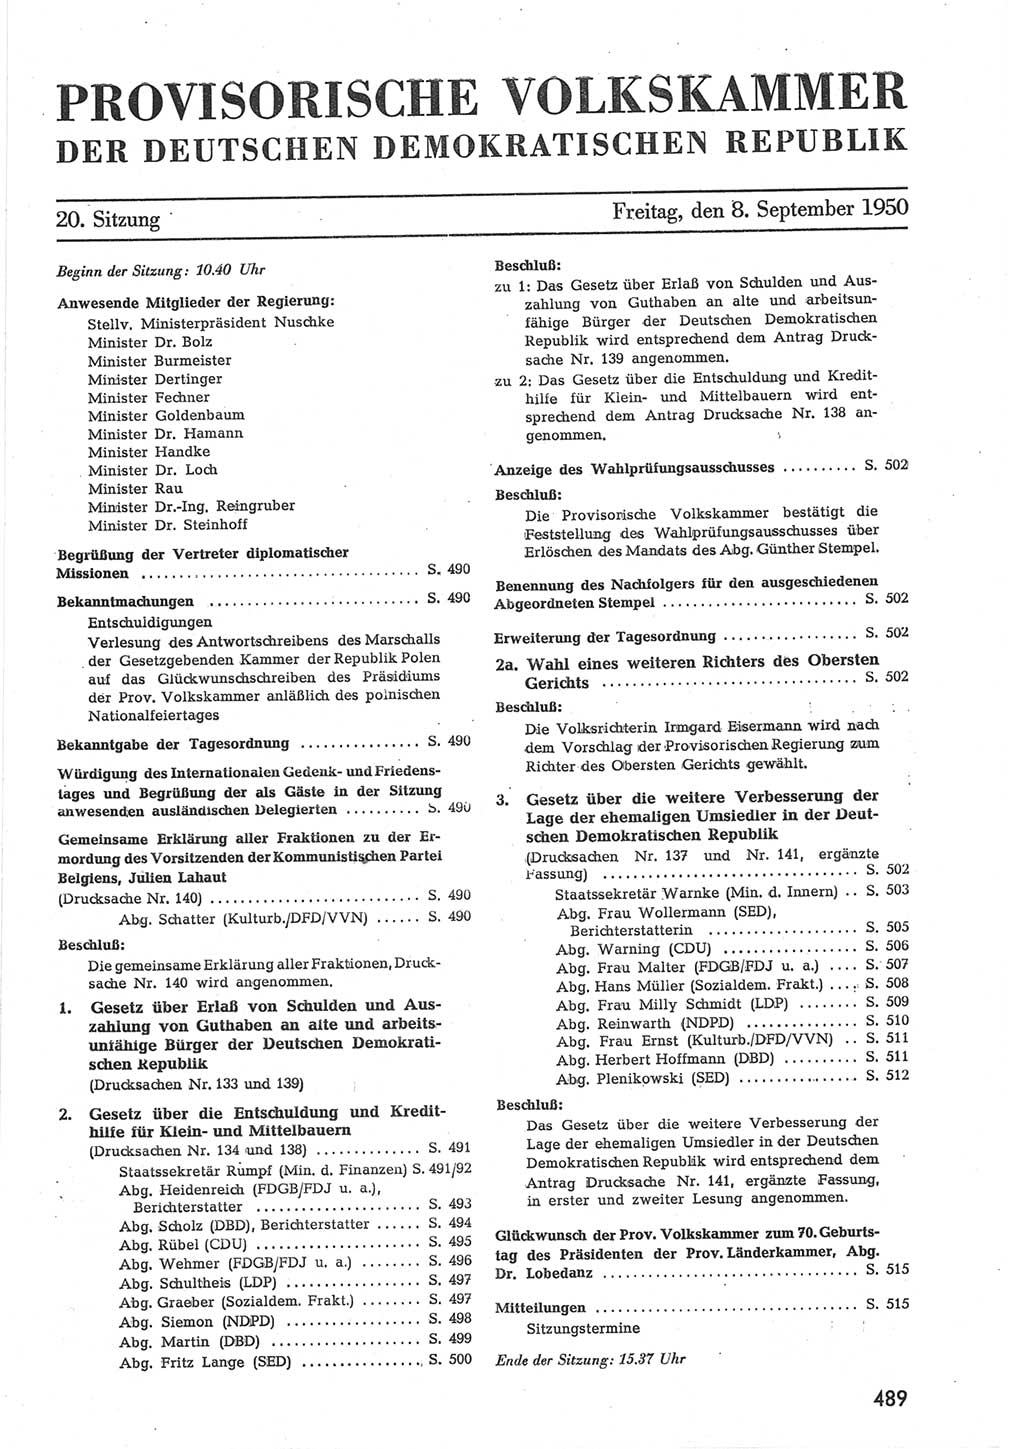 Provisorische Volkskammer (VK) der Deutschen Demokratischen Republik (DDR) 1949-1950, Dokument 507 (Prov. VK DDR 1949-1950, Dok. 507)